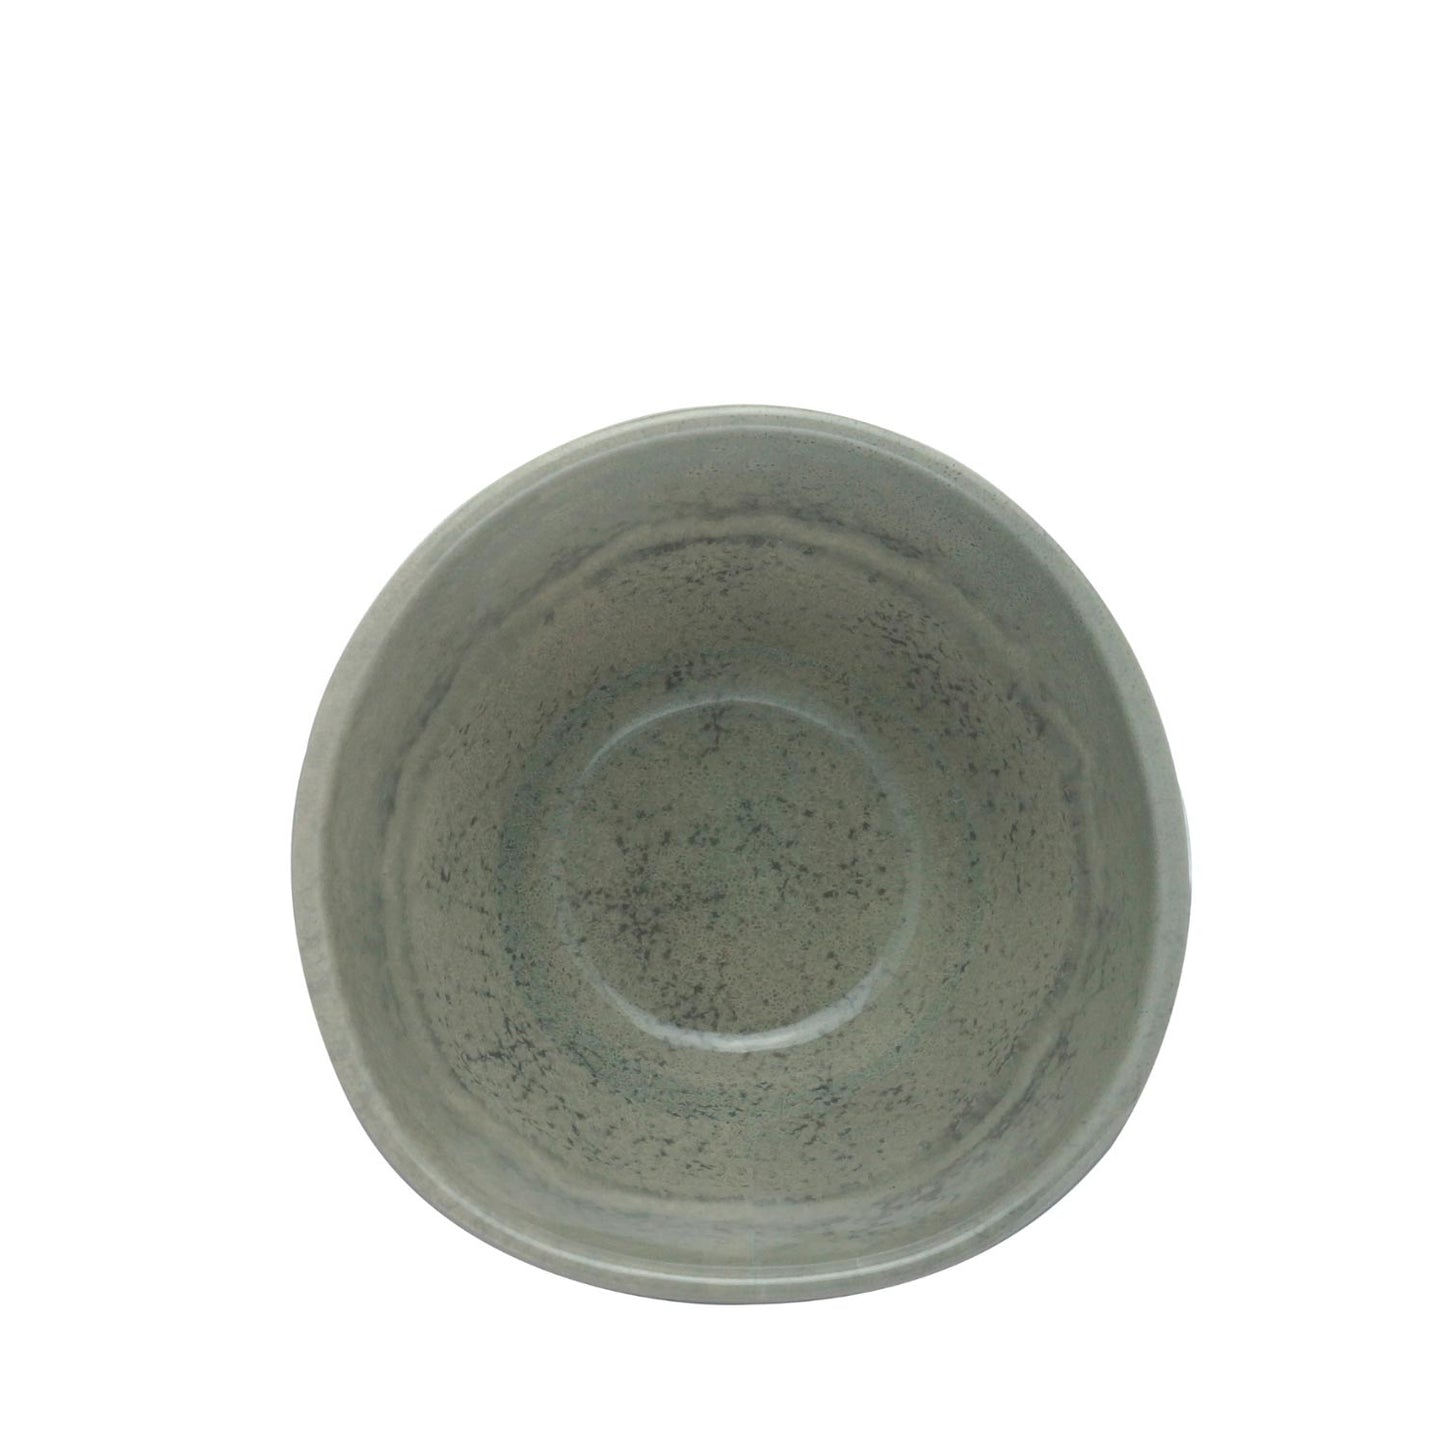 Bowl em Orgânico Ágata Cinza 15 cm